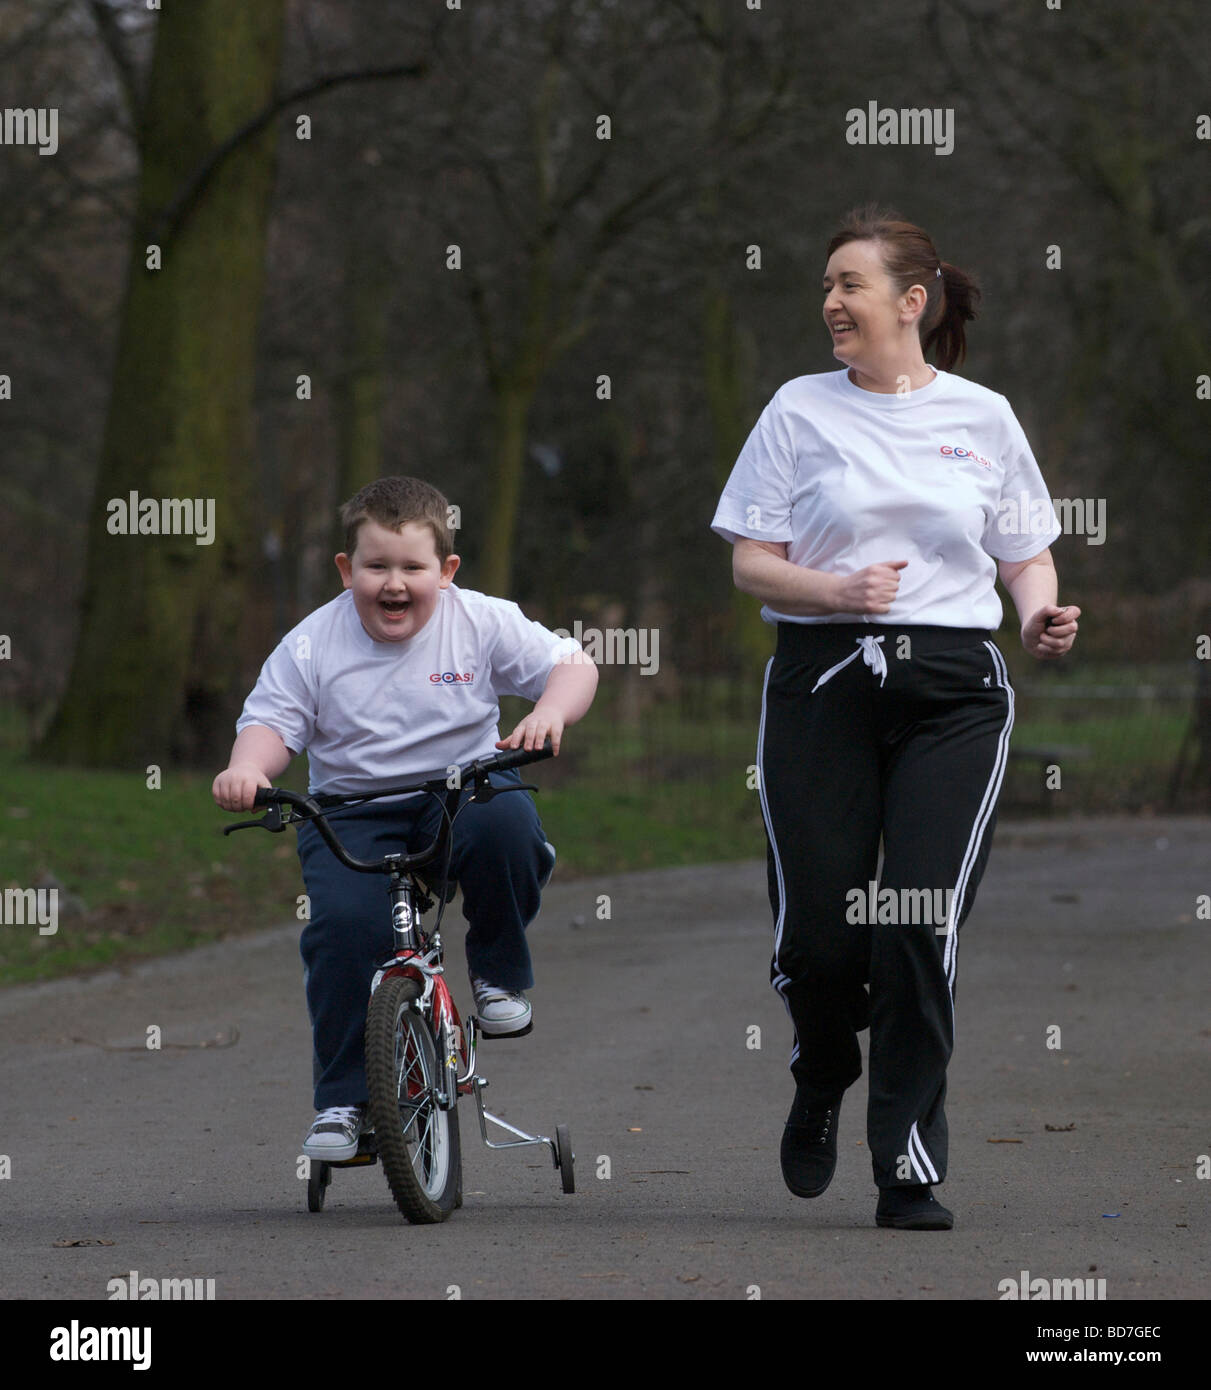 Mutter und übergewichtige Kind auf einen gesunden Lebensstil-Programm "Ziele" spazieren fahren in einem Park in Liverpool. Stockfoto